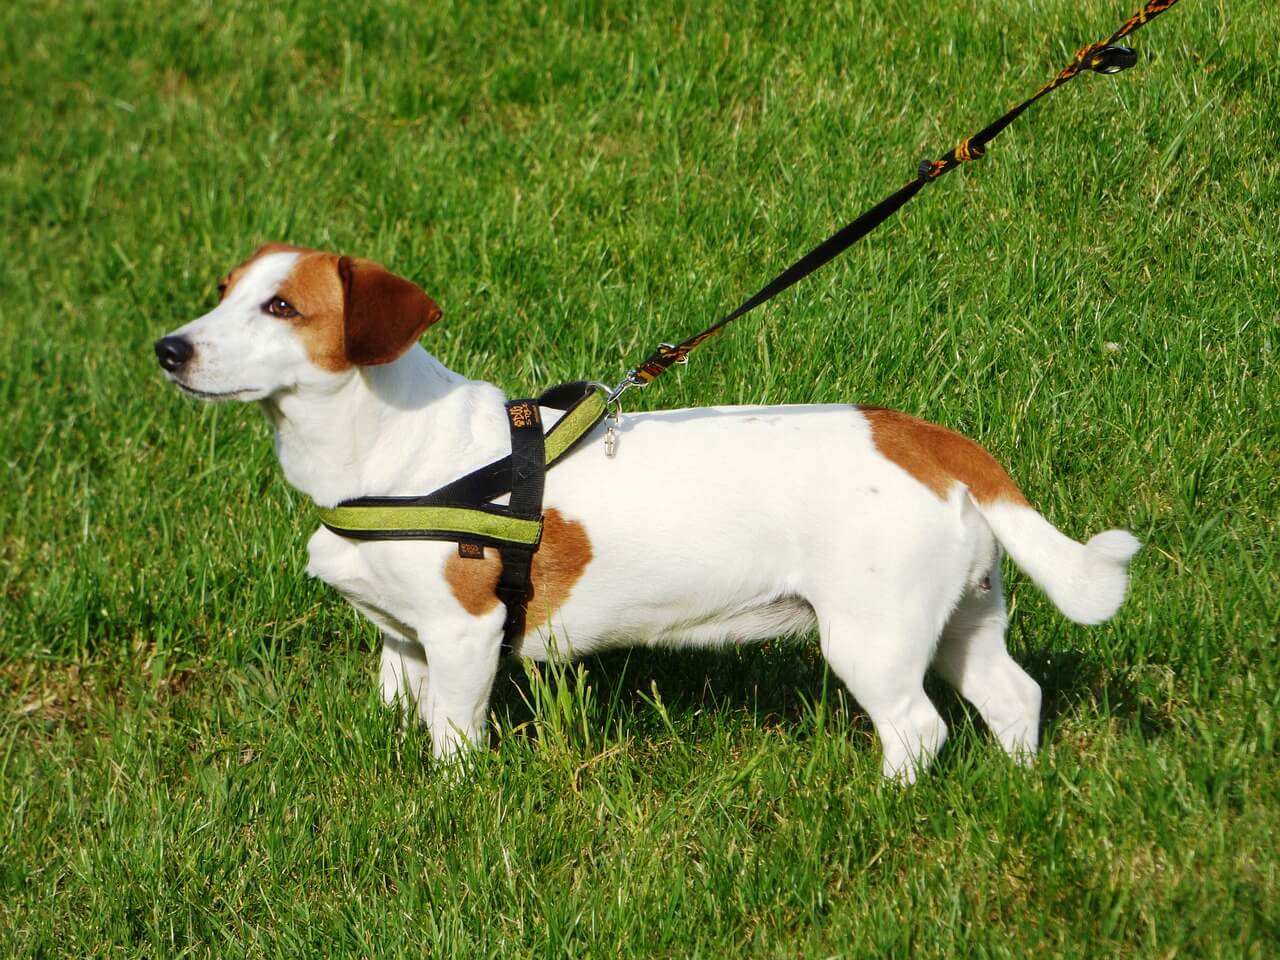 verstellbar Musonic Hundegeschirr inkl atmungsaktiv für kleine und mittelgroße Hunde Leine ideal für Training und Spaziergänge.